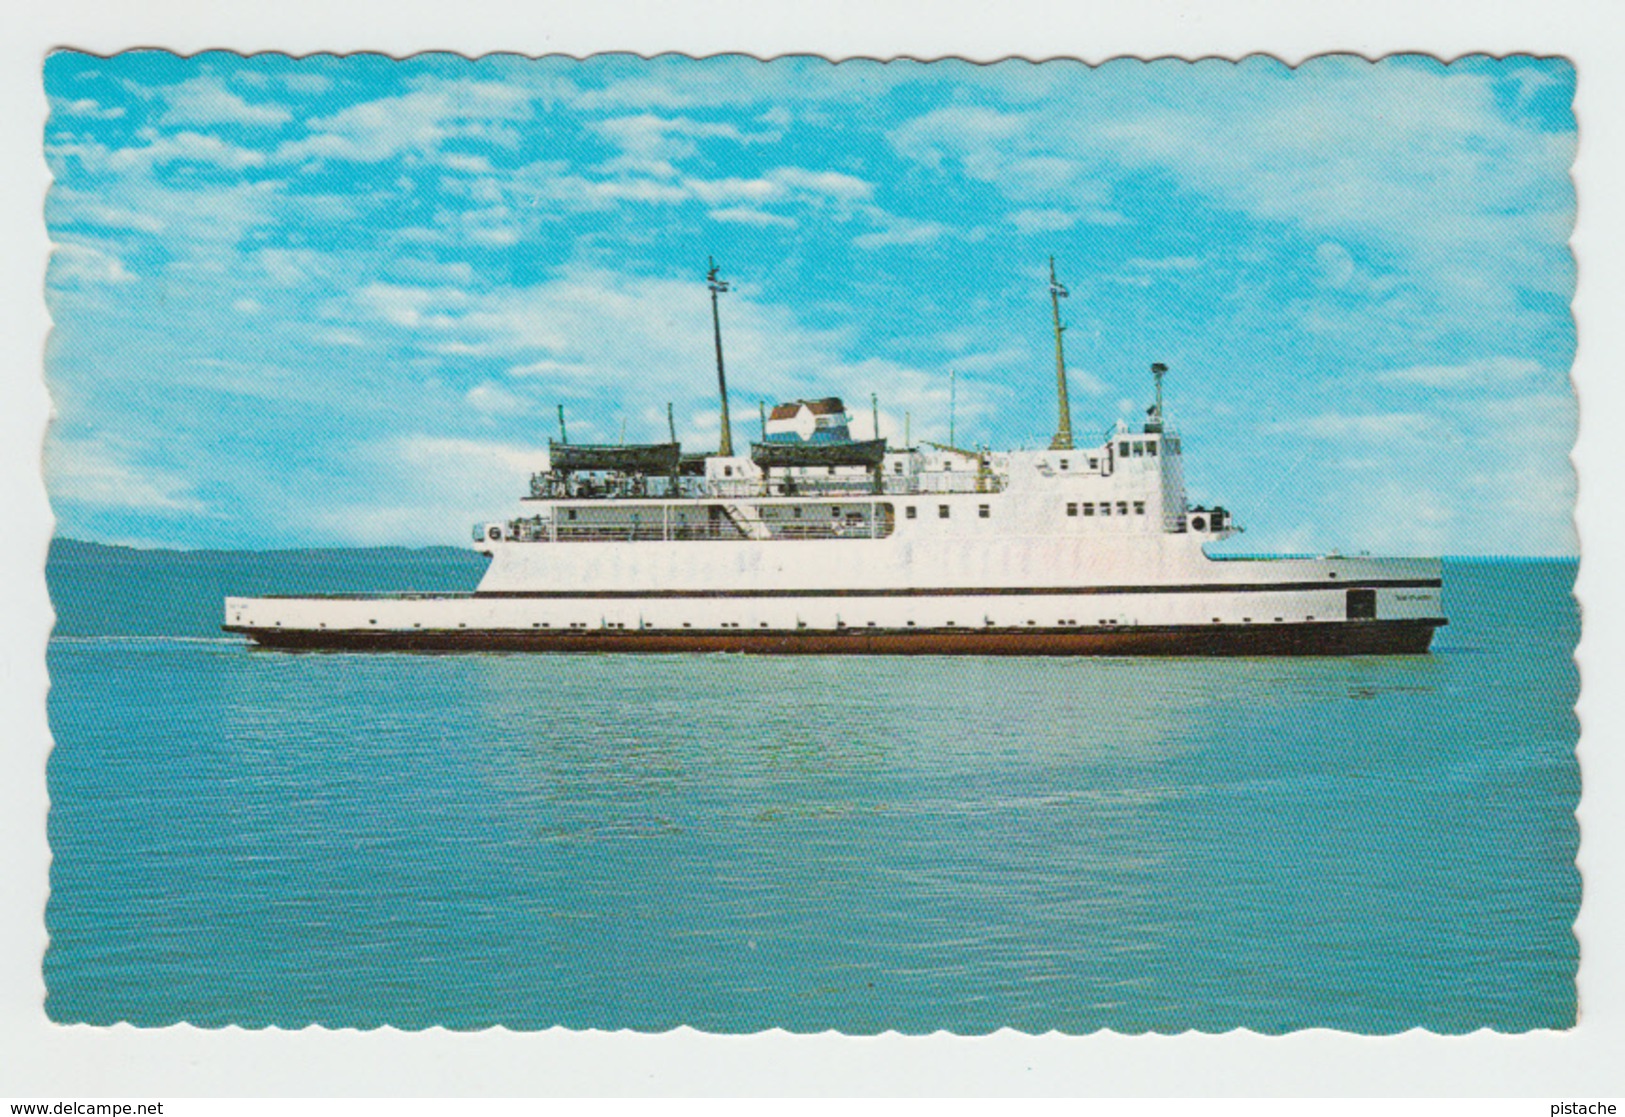 Rivière-du-Loup / Saint-Siméon Québec - Ferry Traversier Trans-Saint-Laurent - Stamp & Postmark 1986 - 2 Scans - Ferries